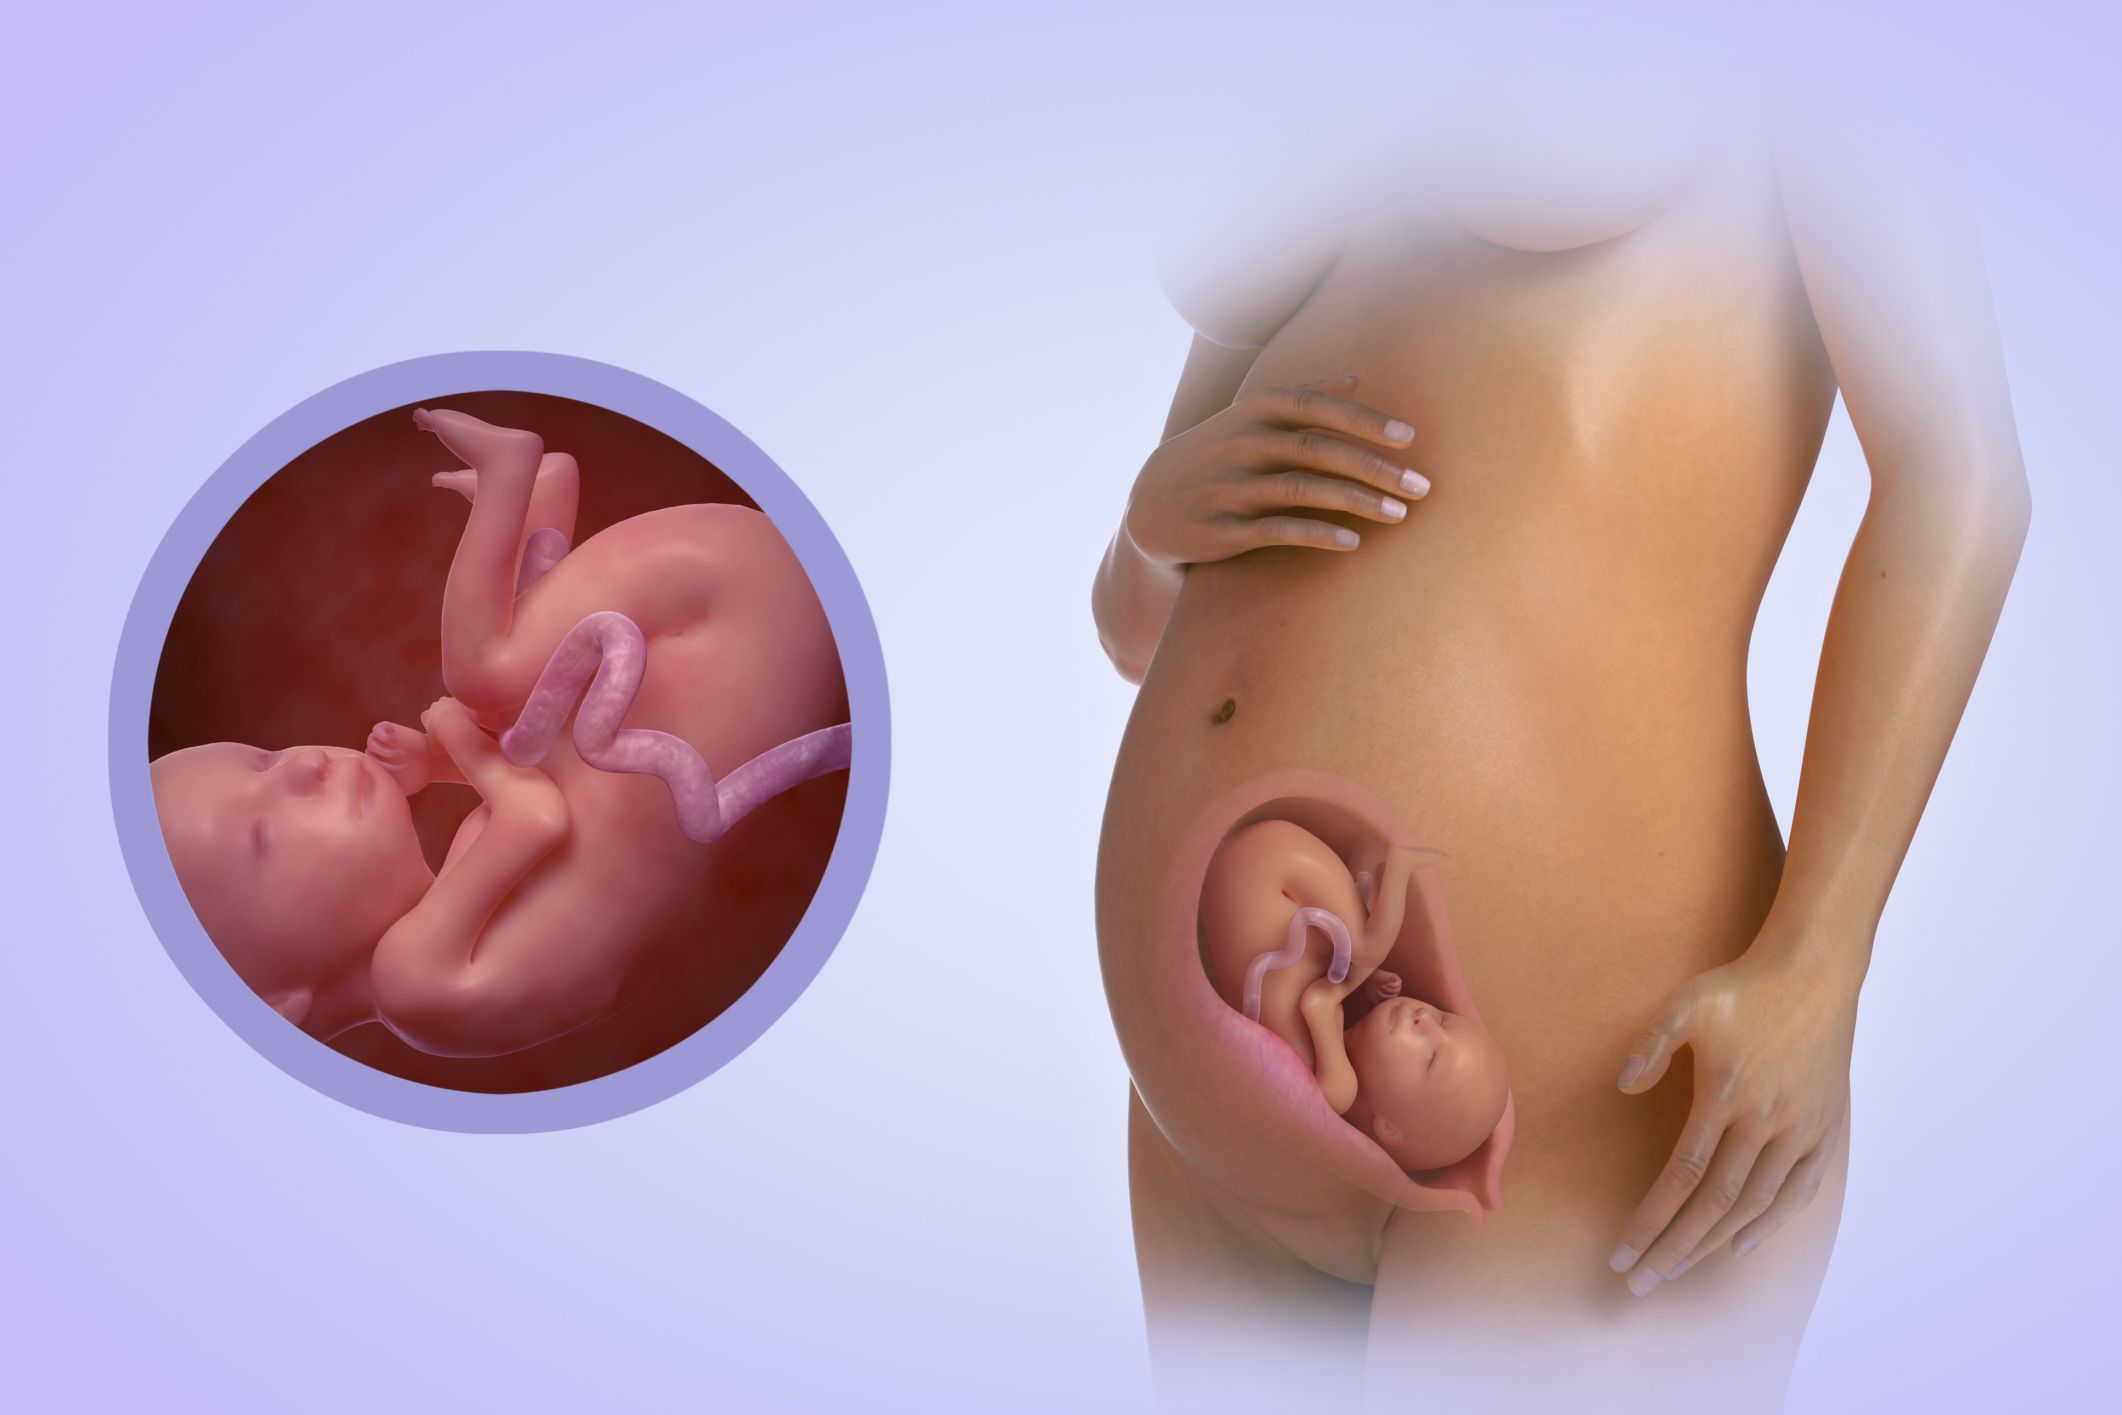 26 неделя беременности - особенности, что происходит с малышом и мамой